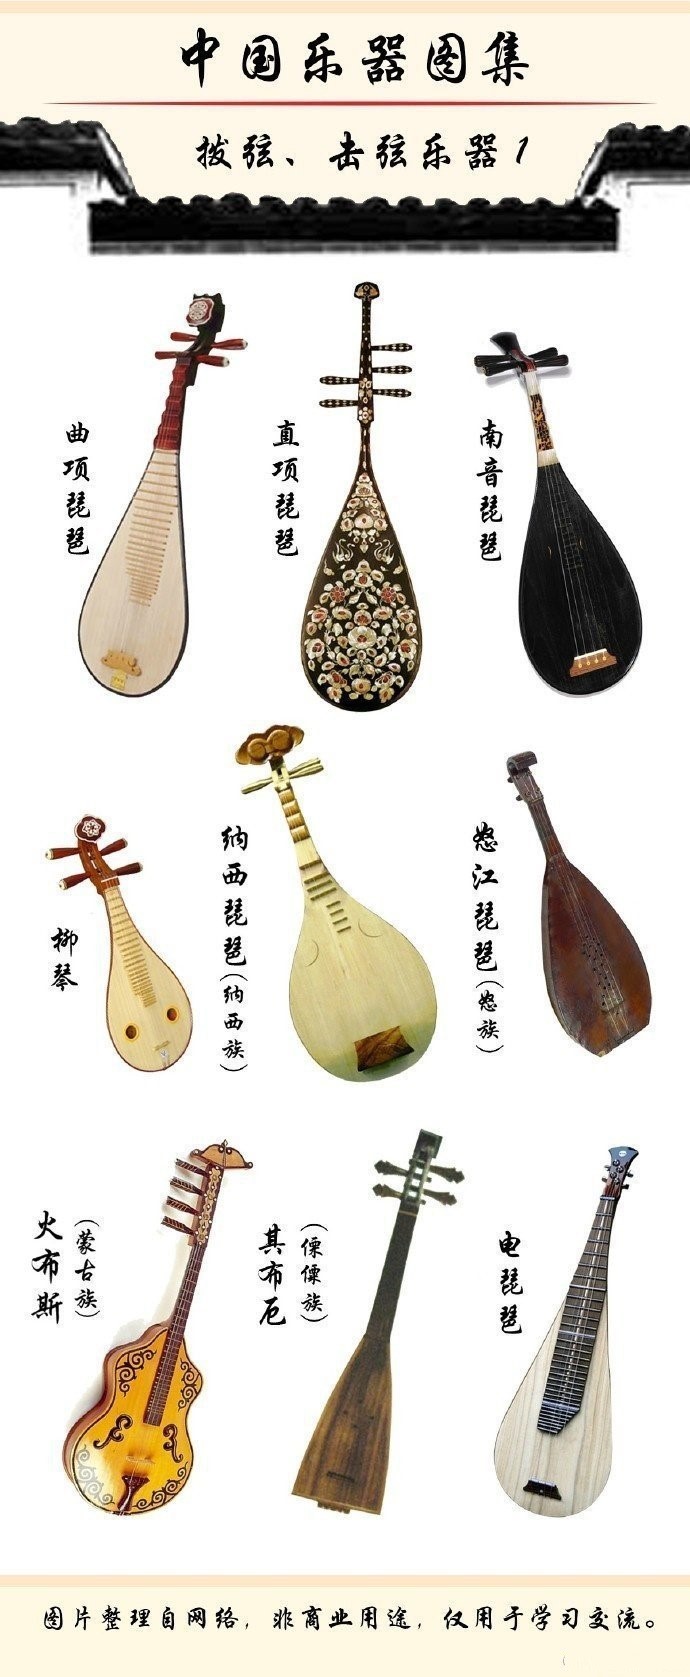 中国乐器大全及图片（中国最全的拨弦击弦类乐器图集）-1